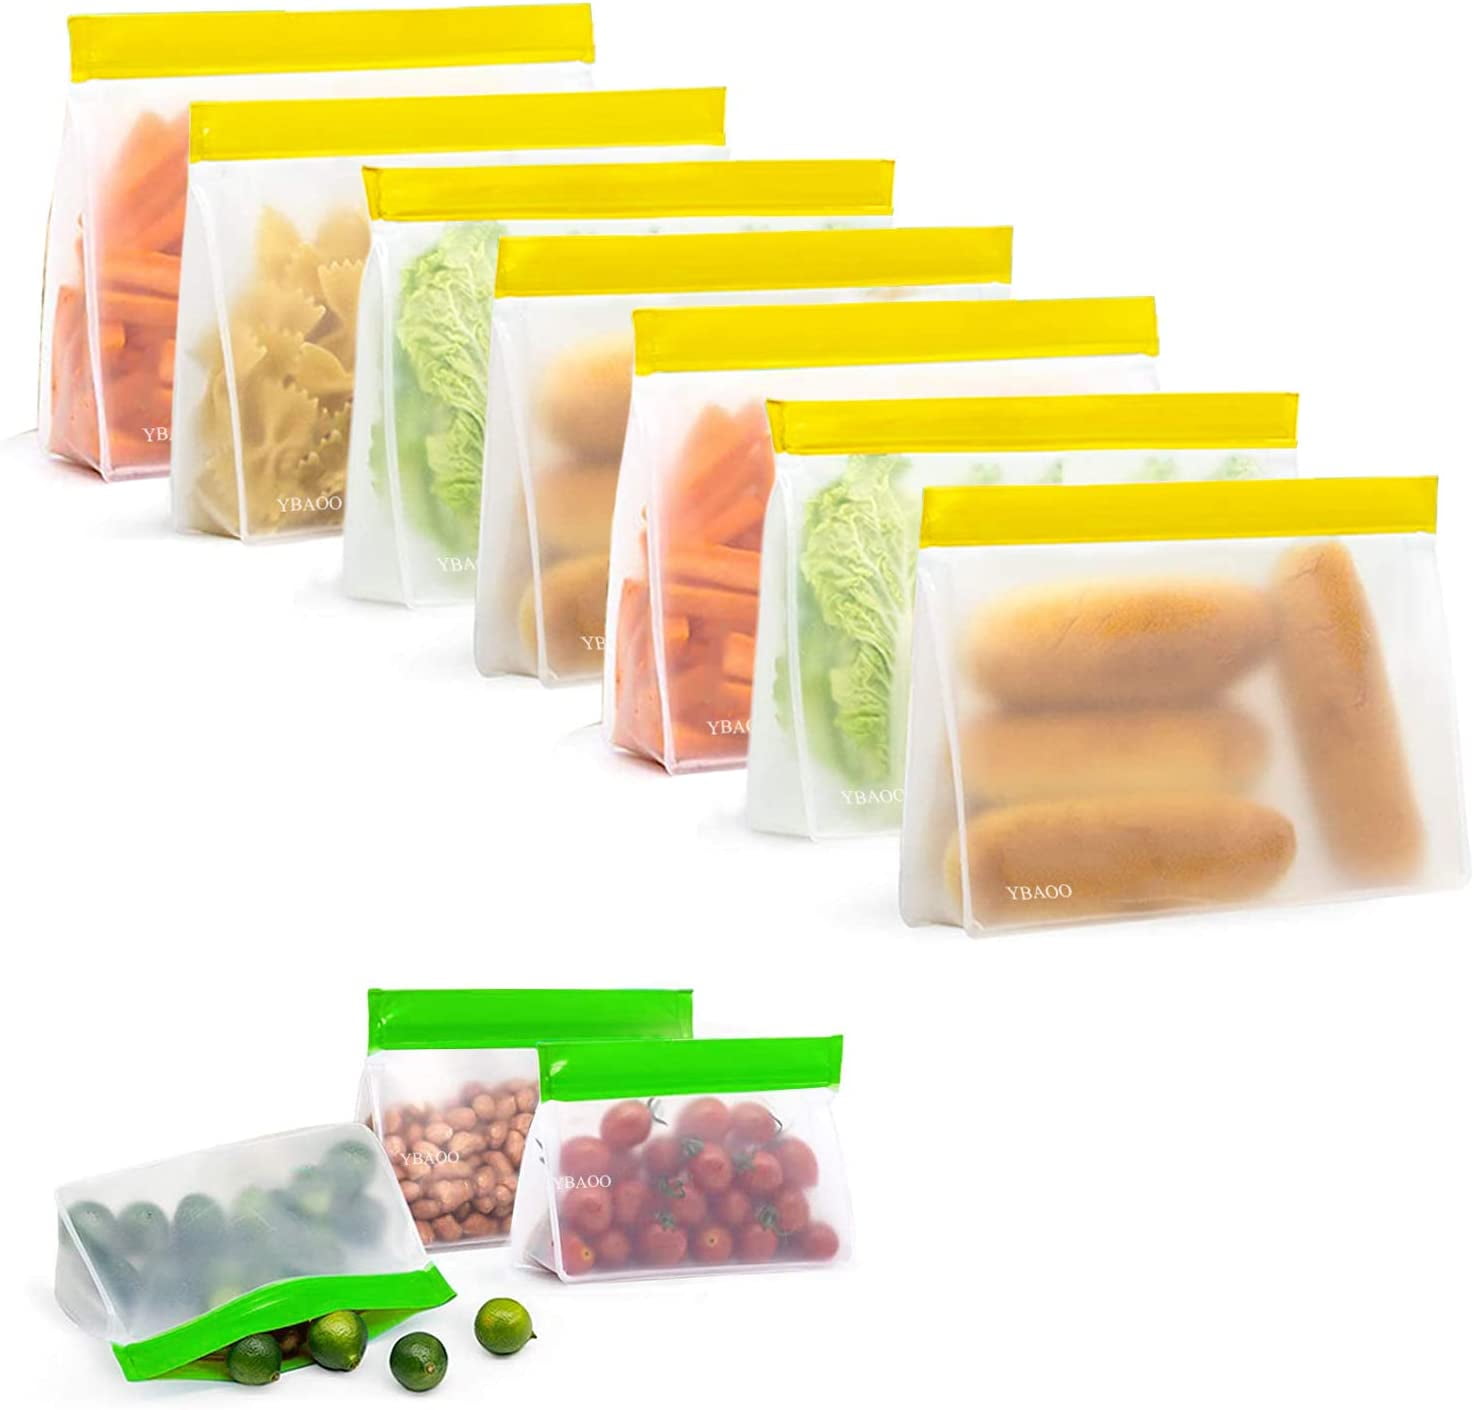 15 Freezer Bags with Slide Zip Large Strong Resealable Reusable Freezer Food Bag